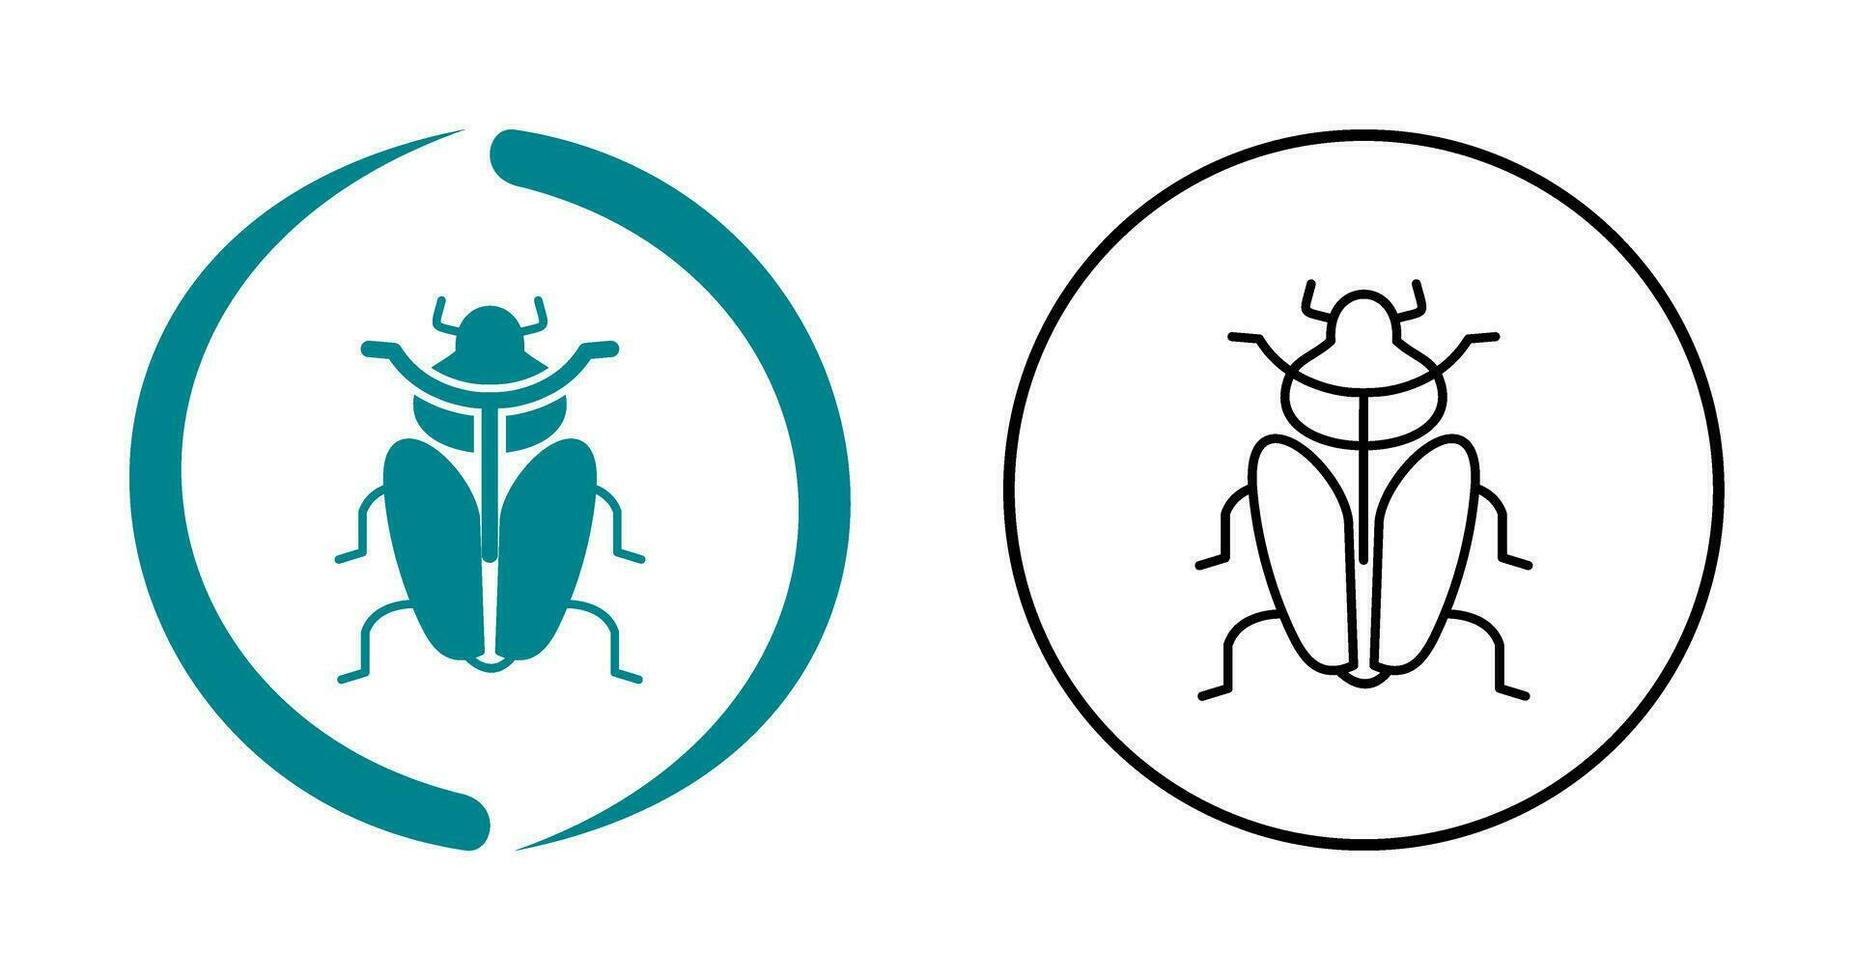 icône de vecteur d'insecte